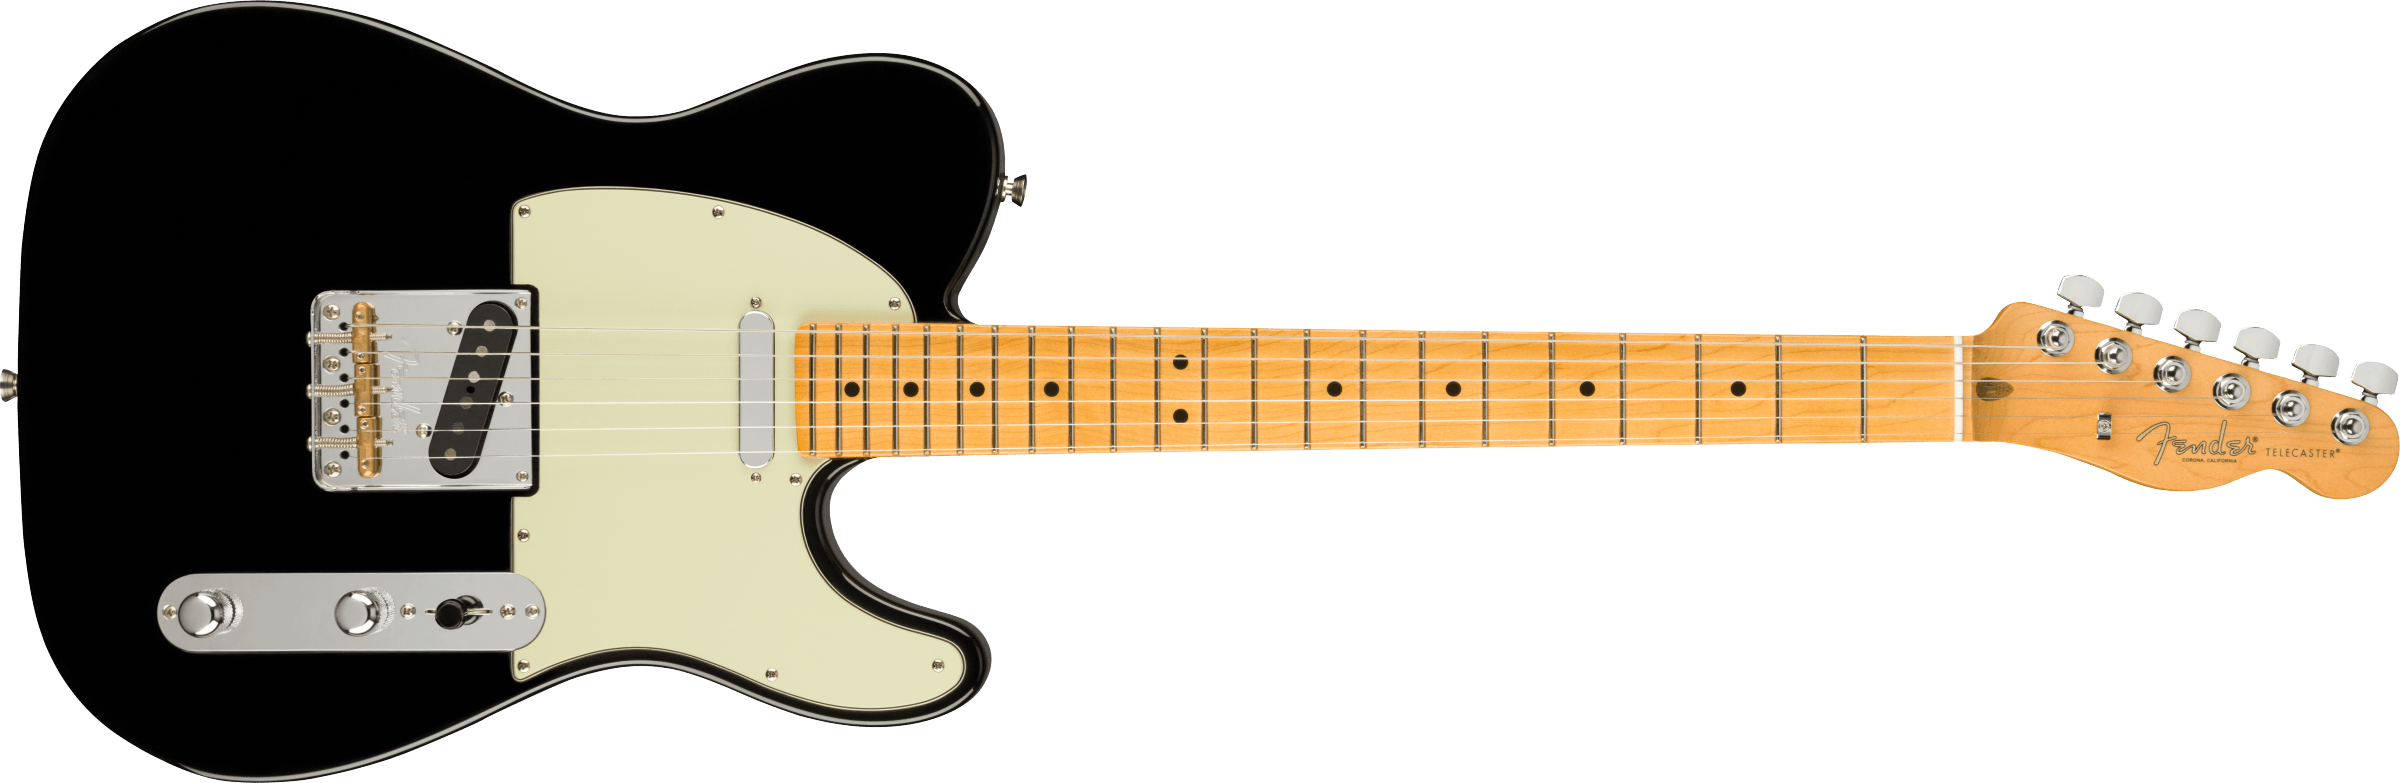 フェンダー Fender Professional Series Instrument Cable SL 10' Black ギターケーブル  ギターシールド AL完売しました。 - レコーディング、PA機材